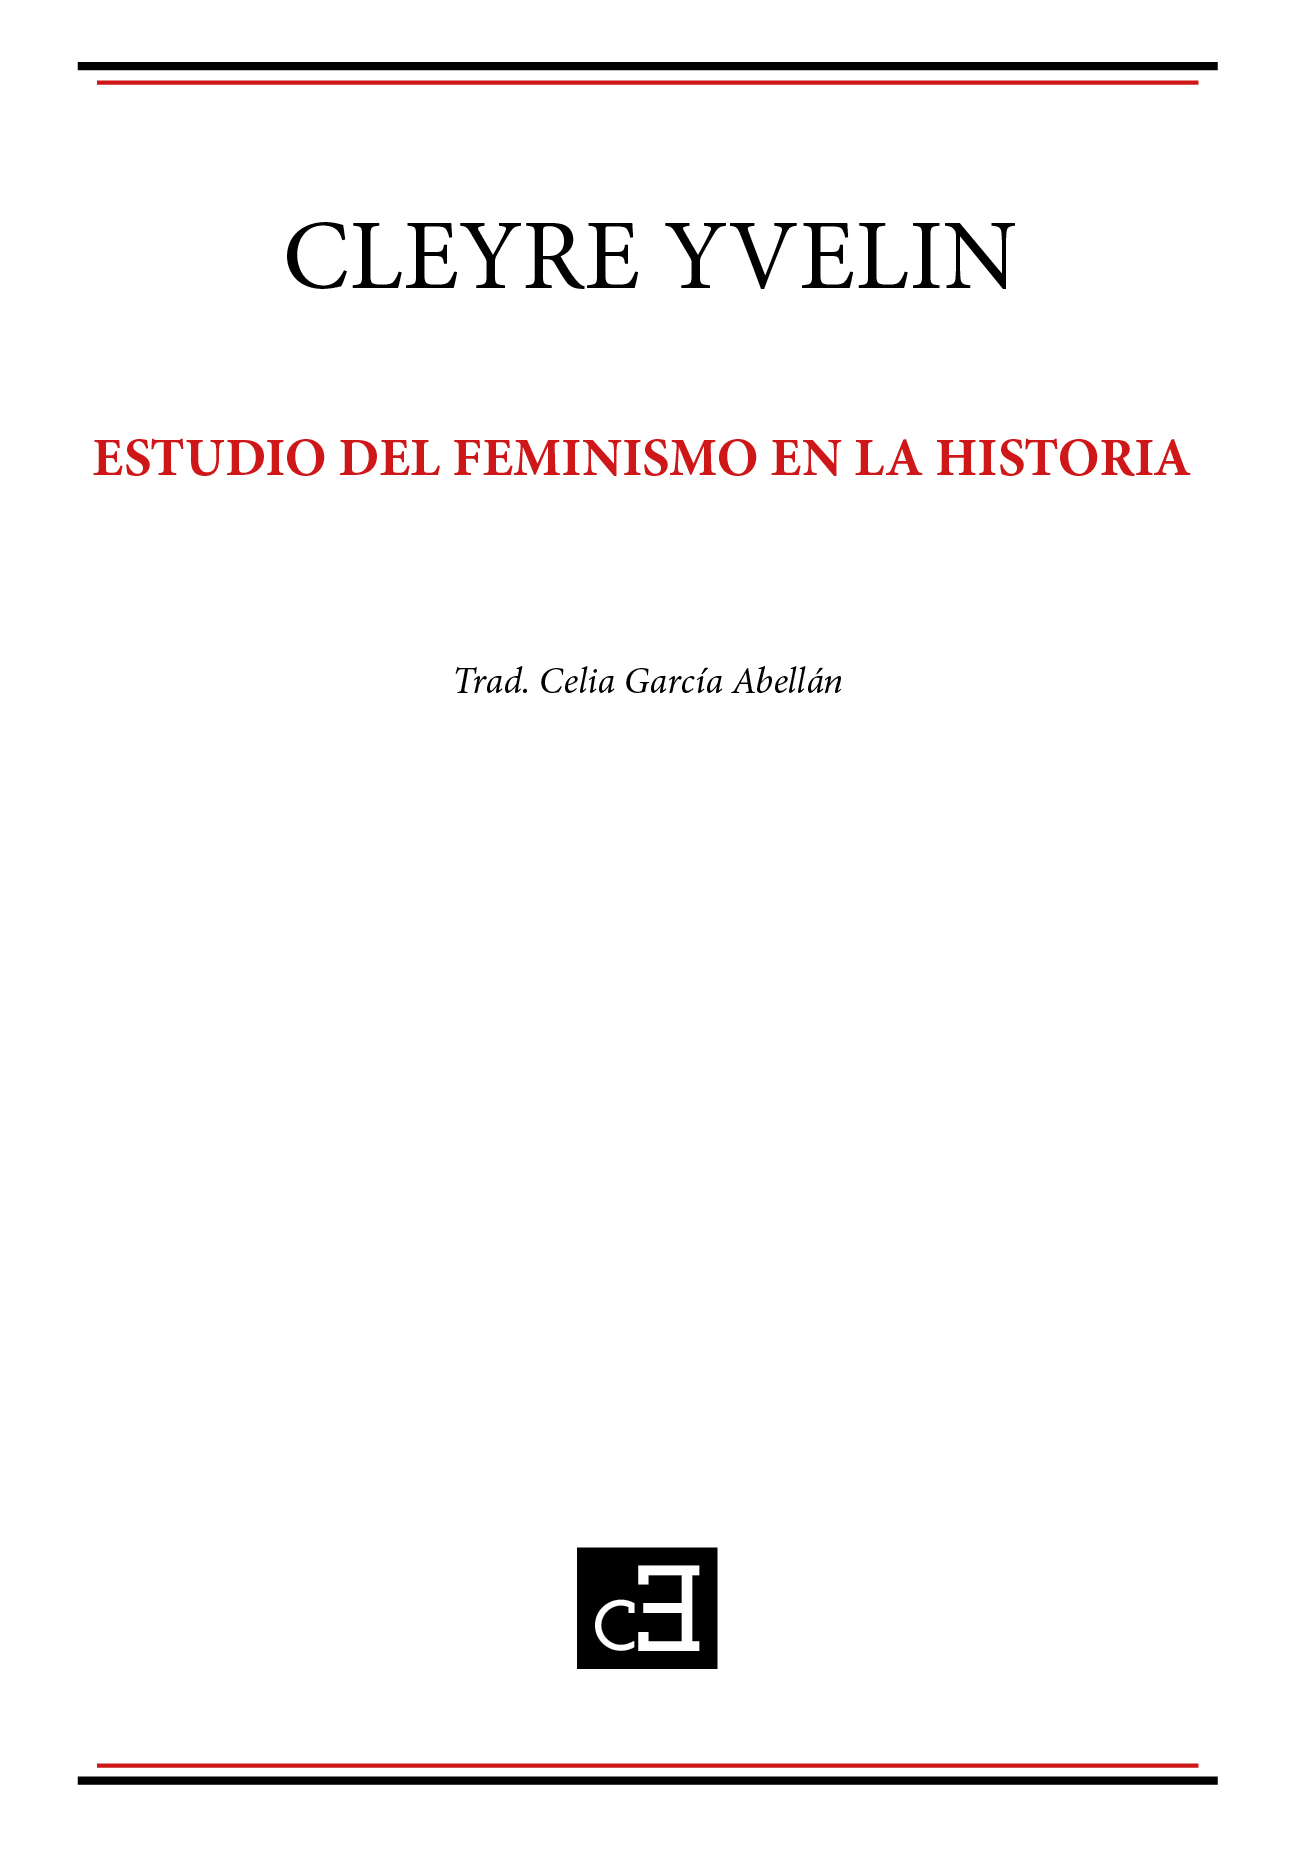 ESTUDIO DEL FEMINISMO EN LA HISTORIA - Cleyre Yvelin